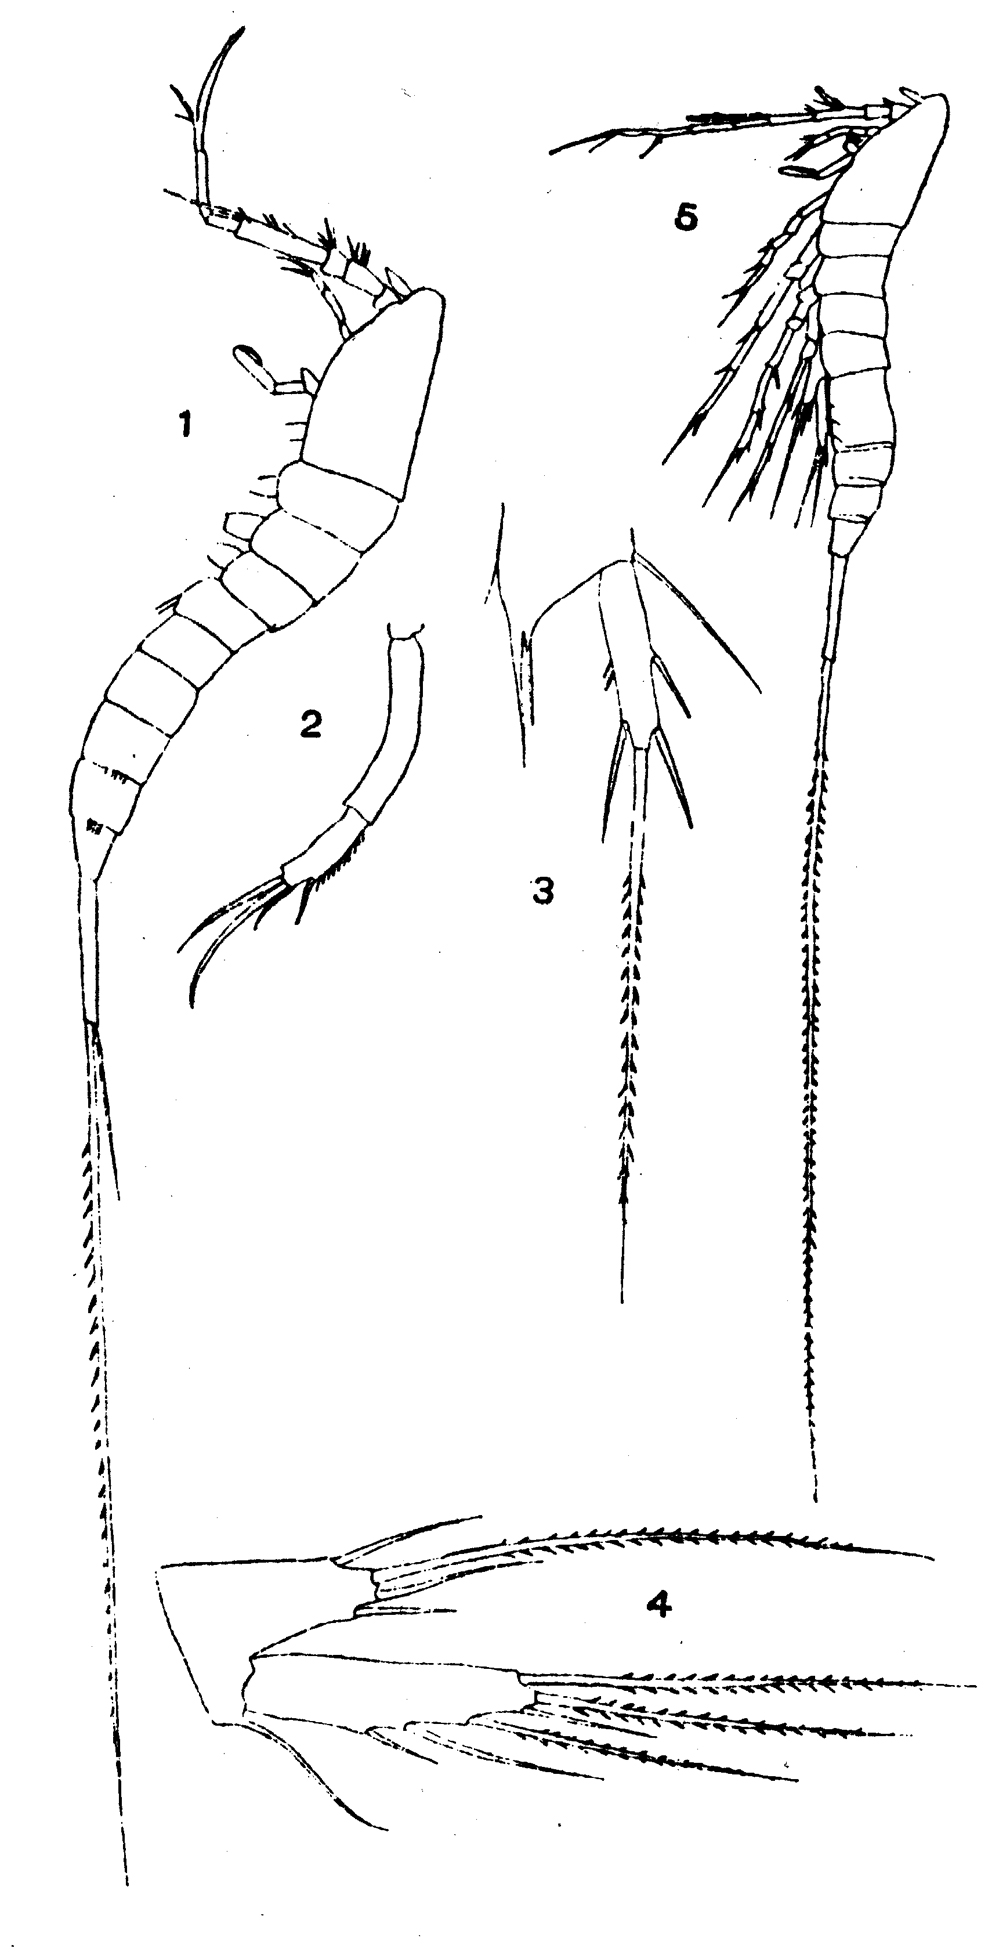 Espèce Macrosetella gracilis - Planche 8 de figures morphologiques